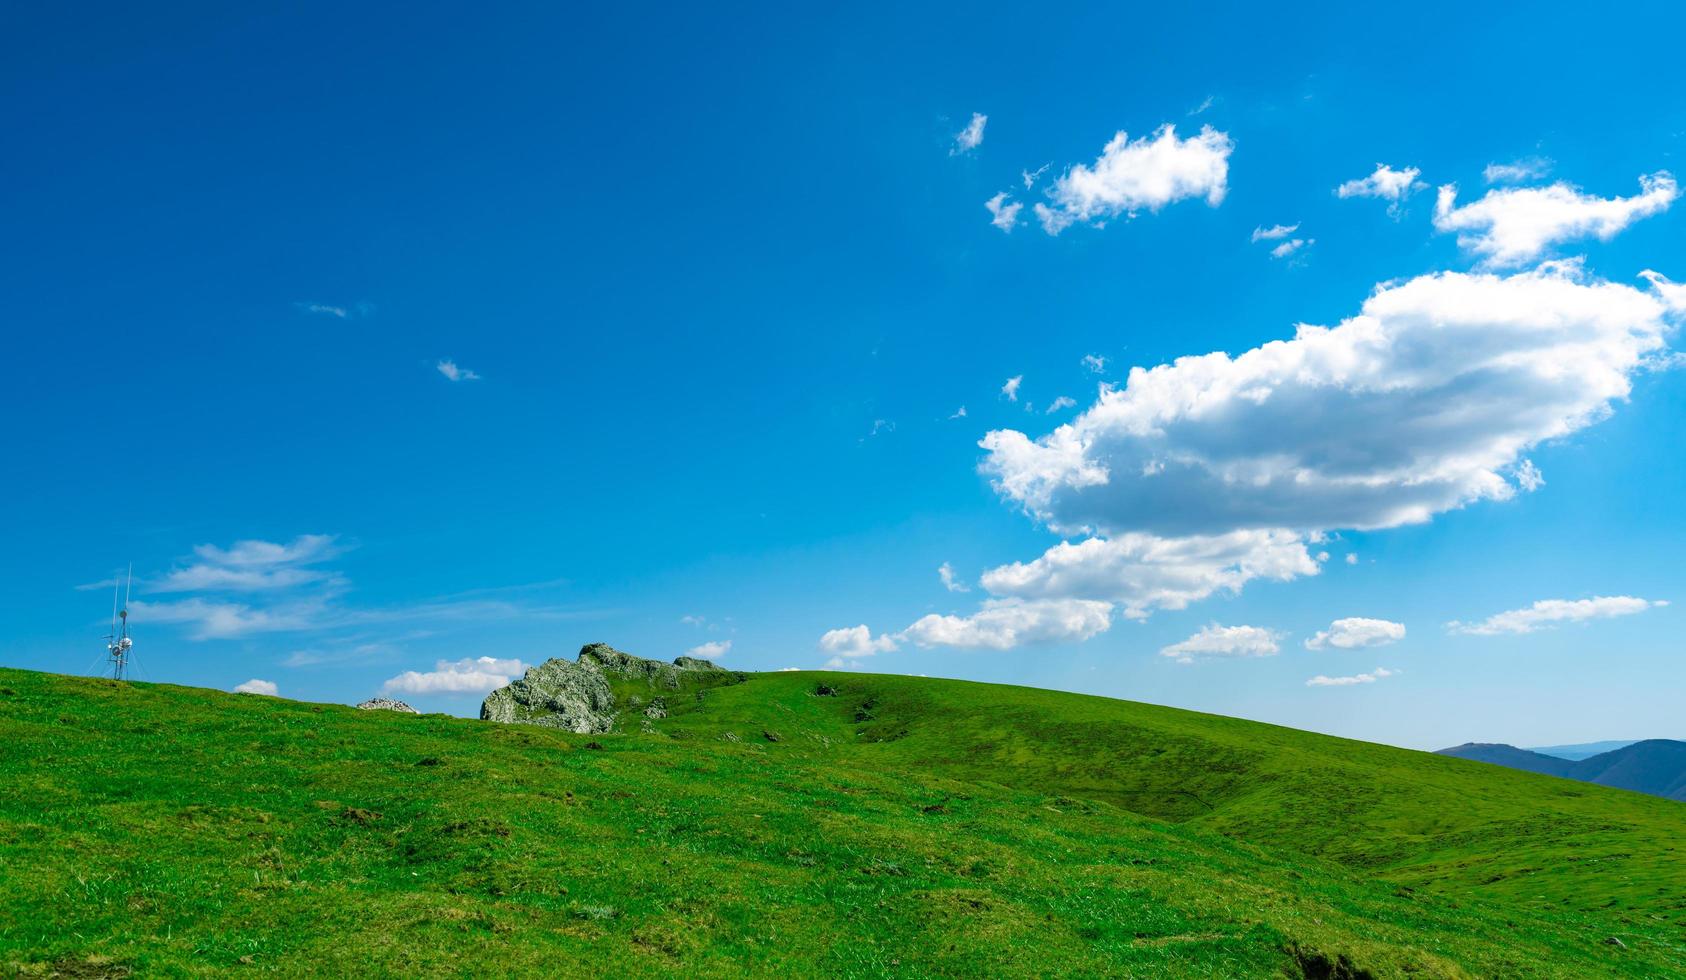 paysage d'herbe verte et de colline rocheuse au printemps avec un beau ciel bleu et des nuages blancs. vue campagne ou champêtre. fond de nature en journée ensoleillée. environnement d'air frais. pierre sur la montagne. photo